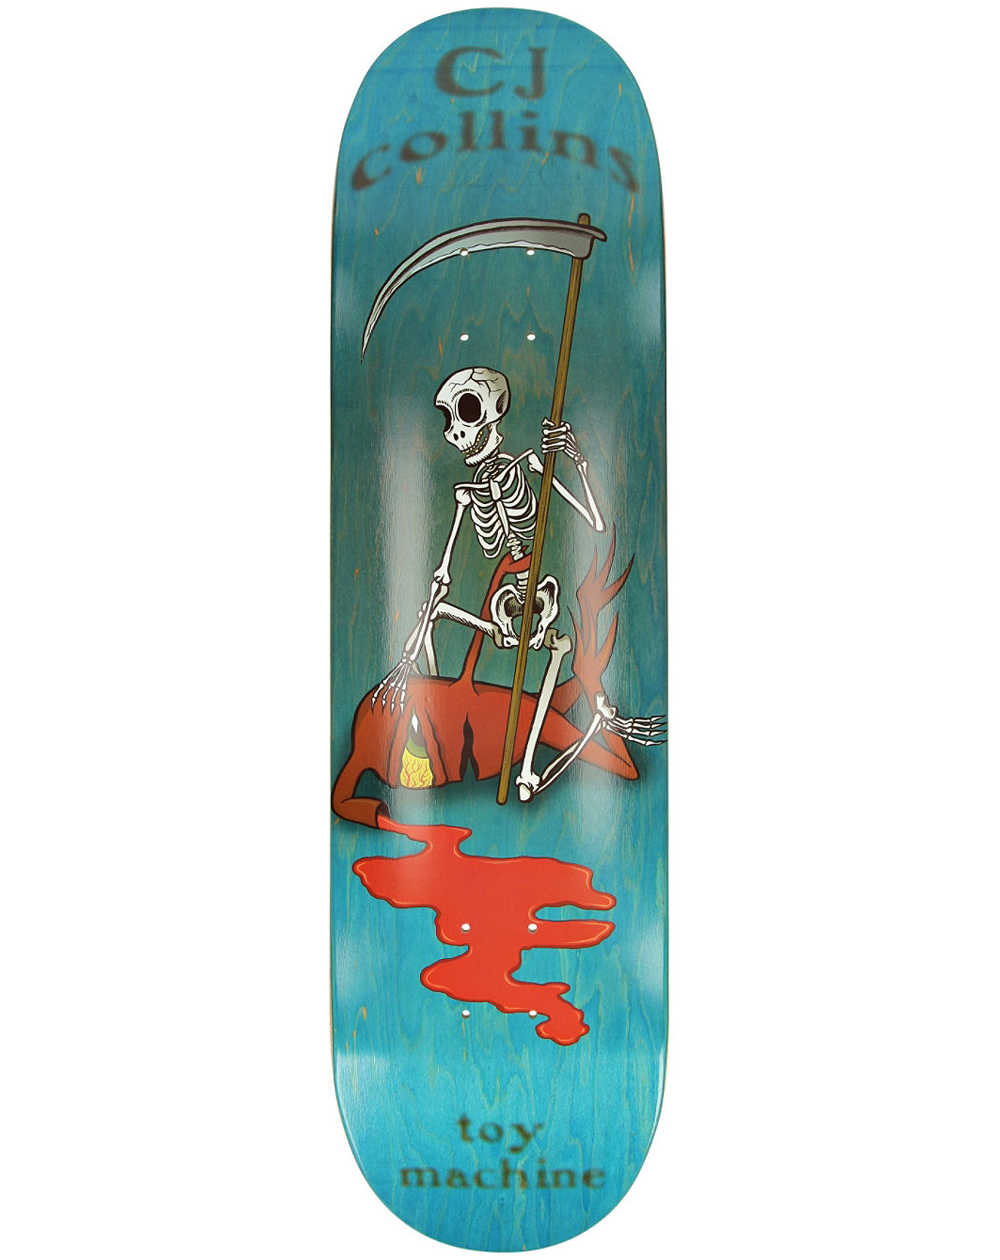 SHAOXI Équipement de Planche à roulettes Skateboards, 80 * 20cm Skateboards  pour Adultes U Adolescents, Panneau de Patins Cruiser Maple, Y Compris